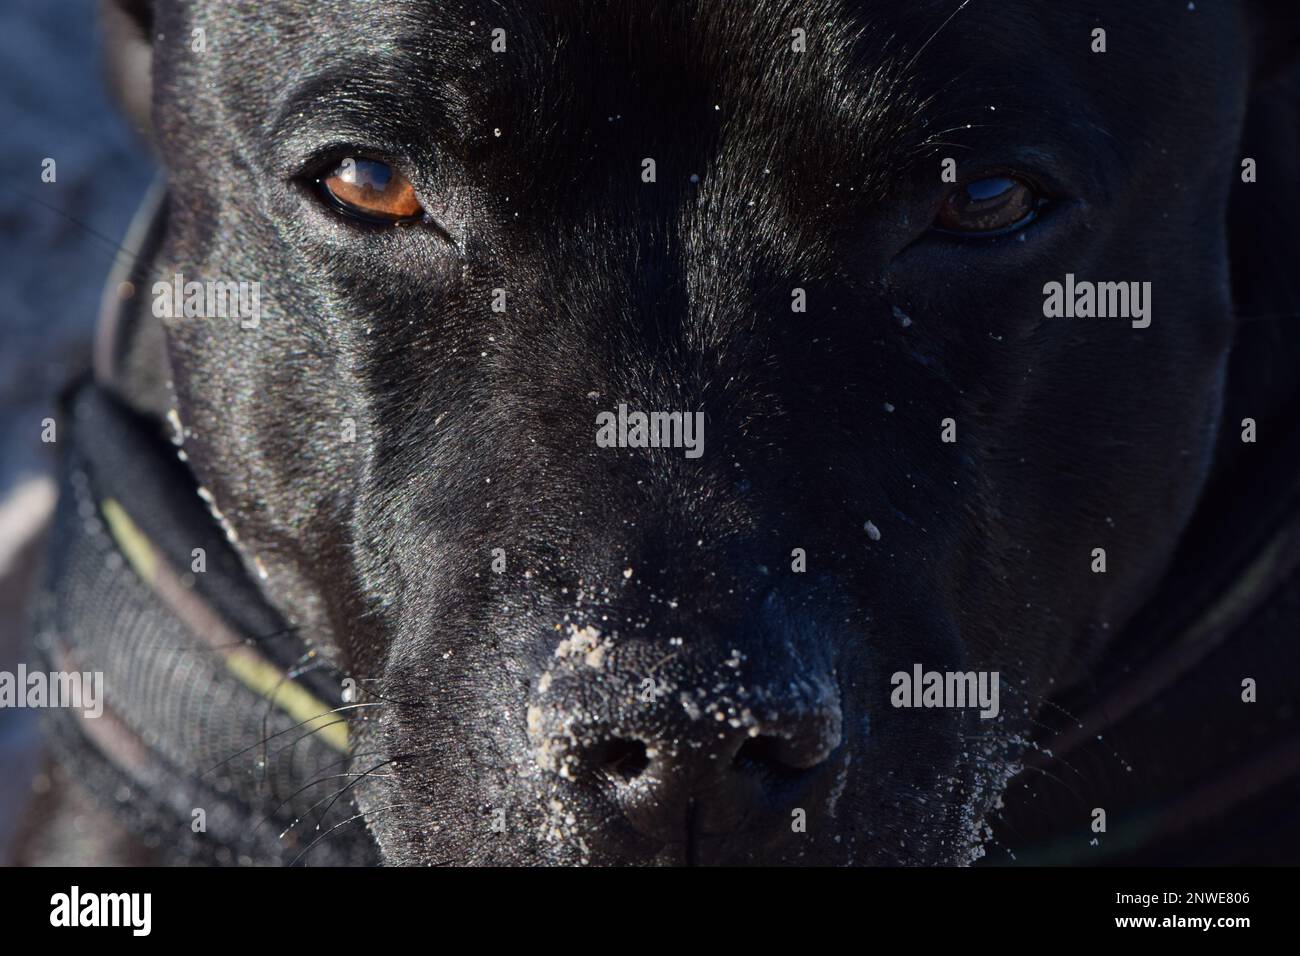 Gros Plan sur le regard d'un chien de race Staffordshire Bullterrier, yeux, Museau et truffe Stockfoto